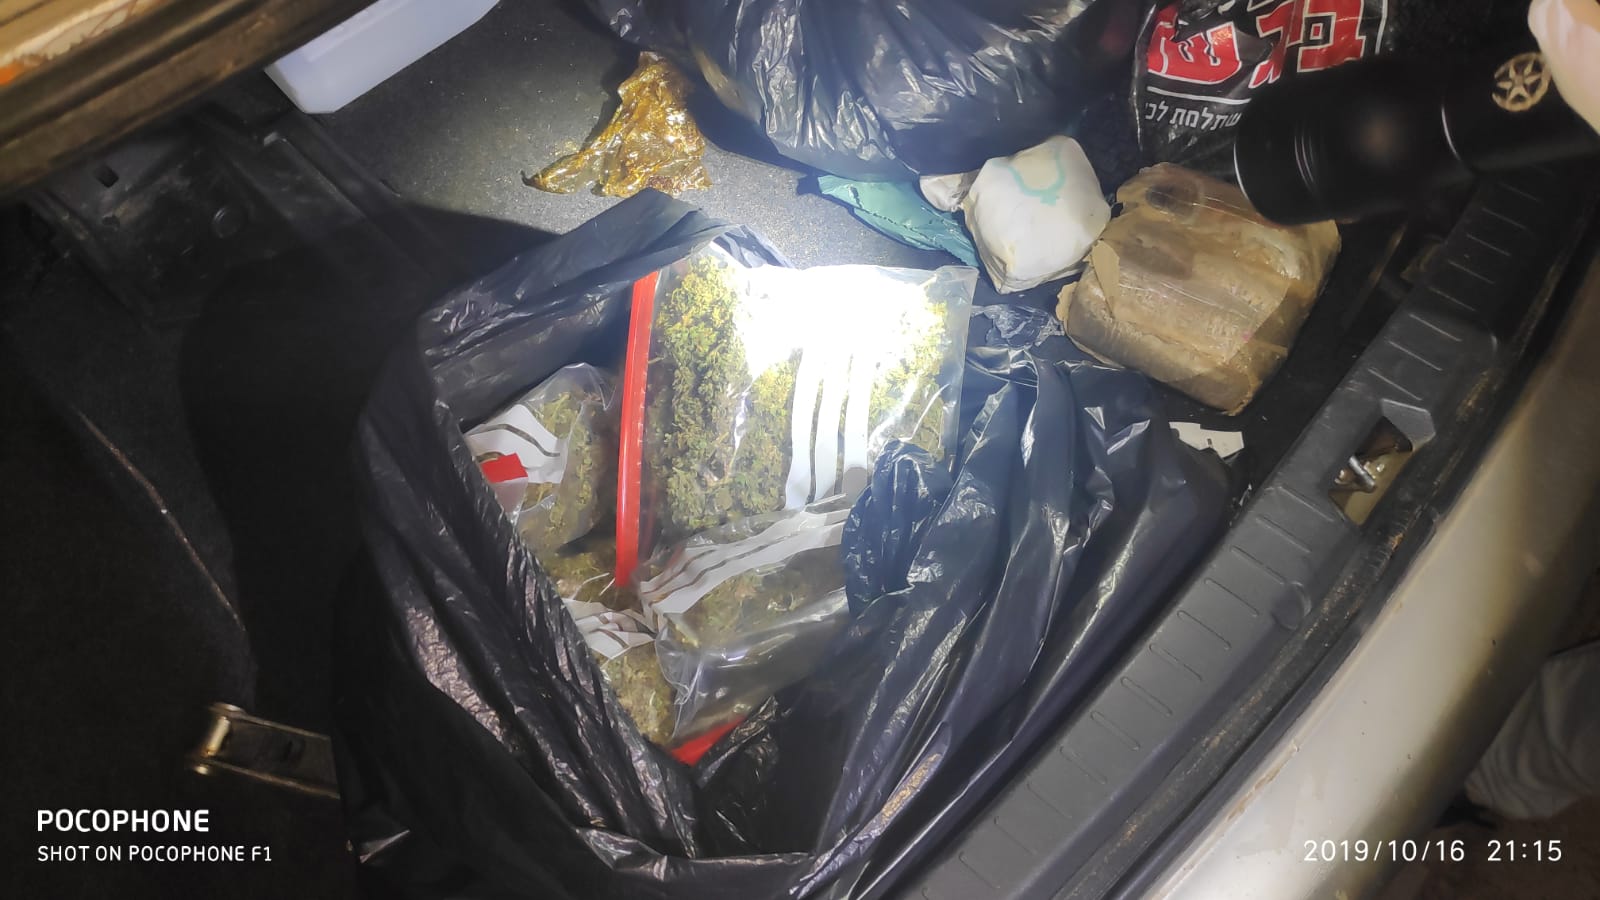 הסמים שנתפסו בתא המטען של הרכב. צילום: דוברות המשטרה